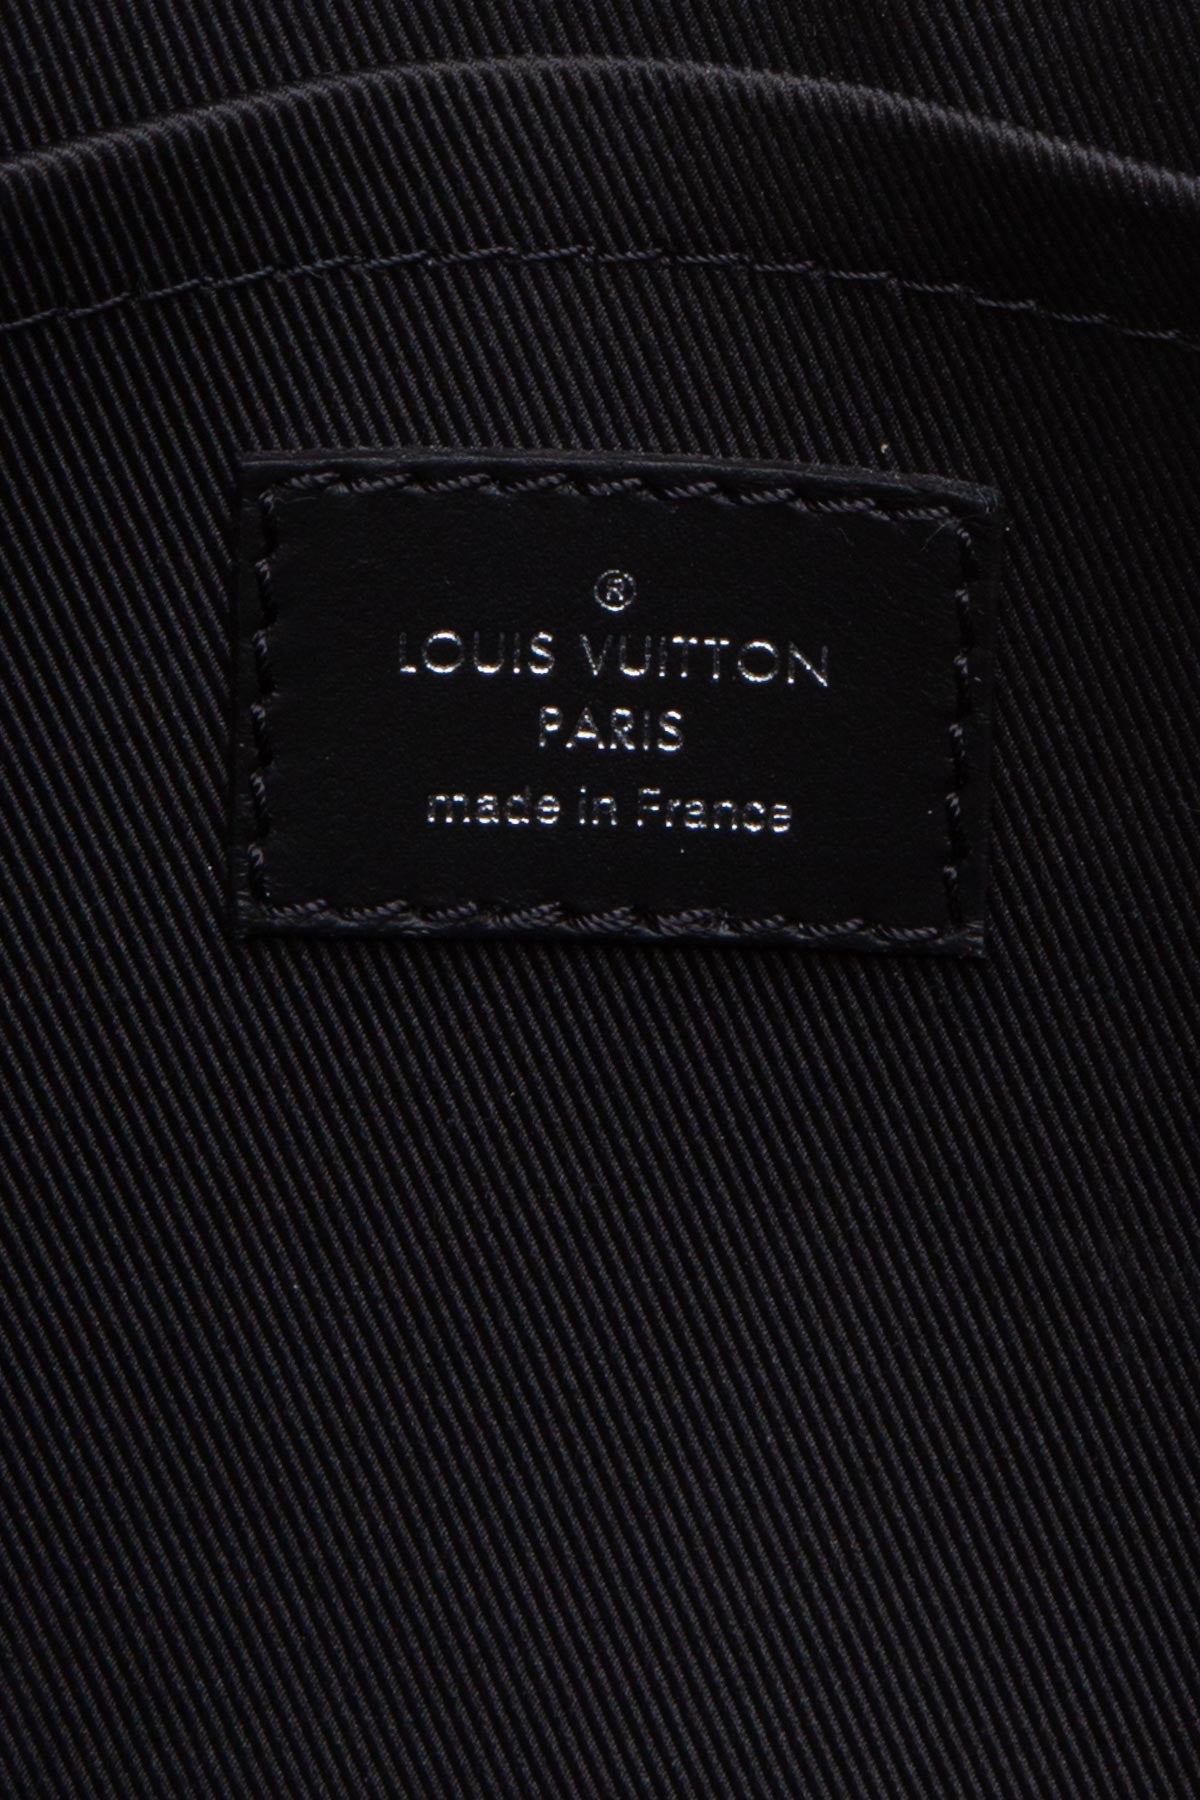 Louis Vuitton Trunk Messenger Bag - Couture USA